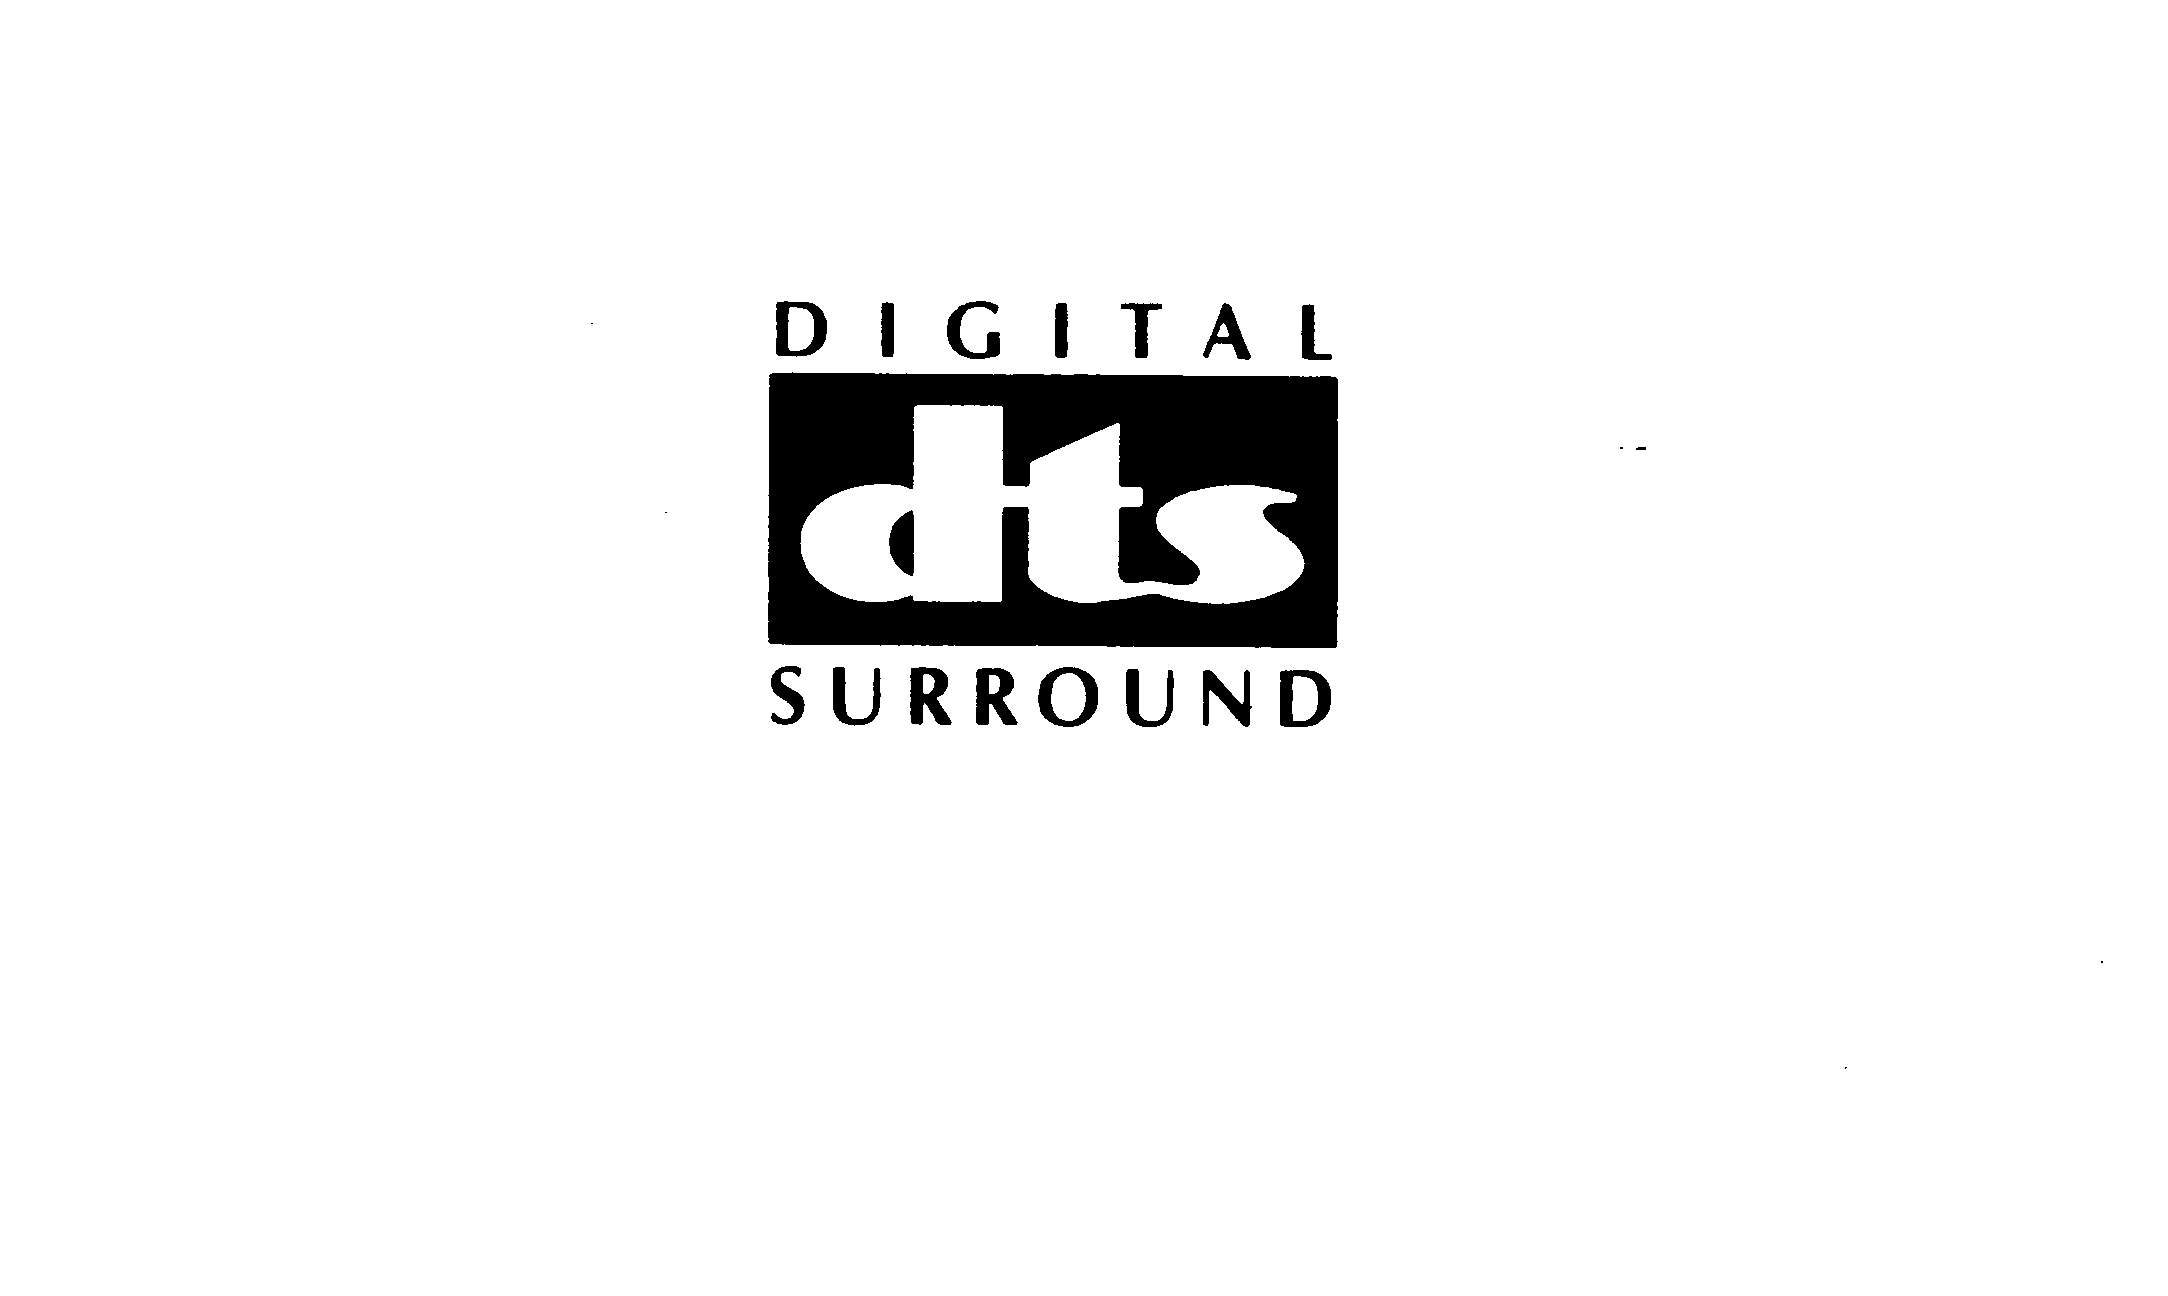 DTS DIGITAL SURROUND